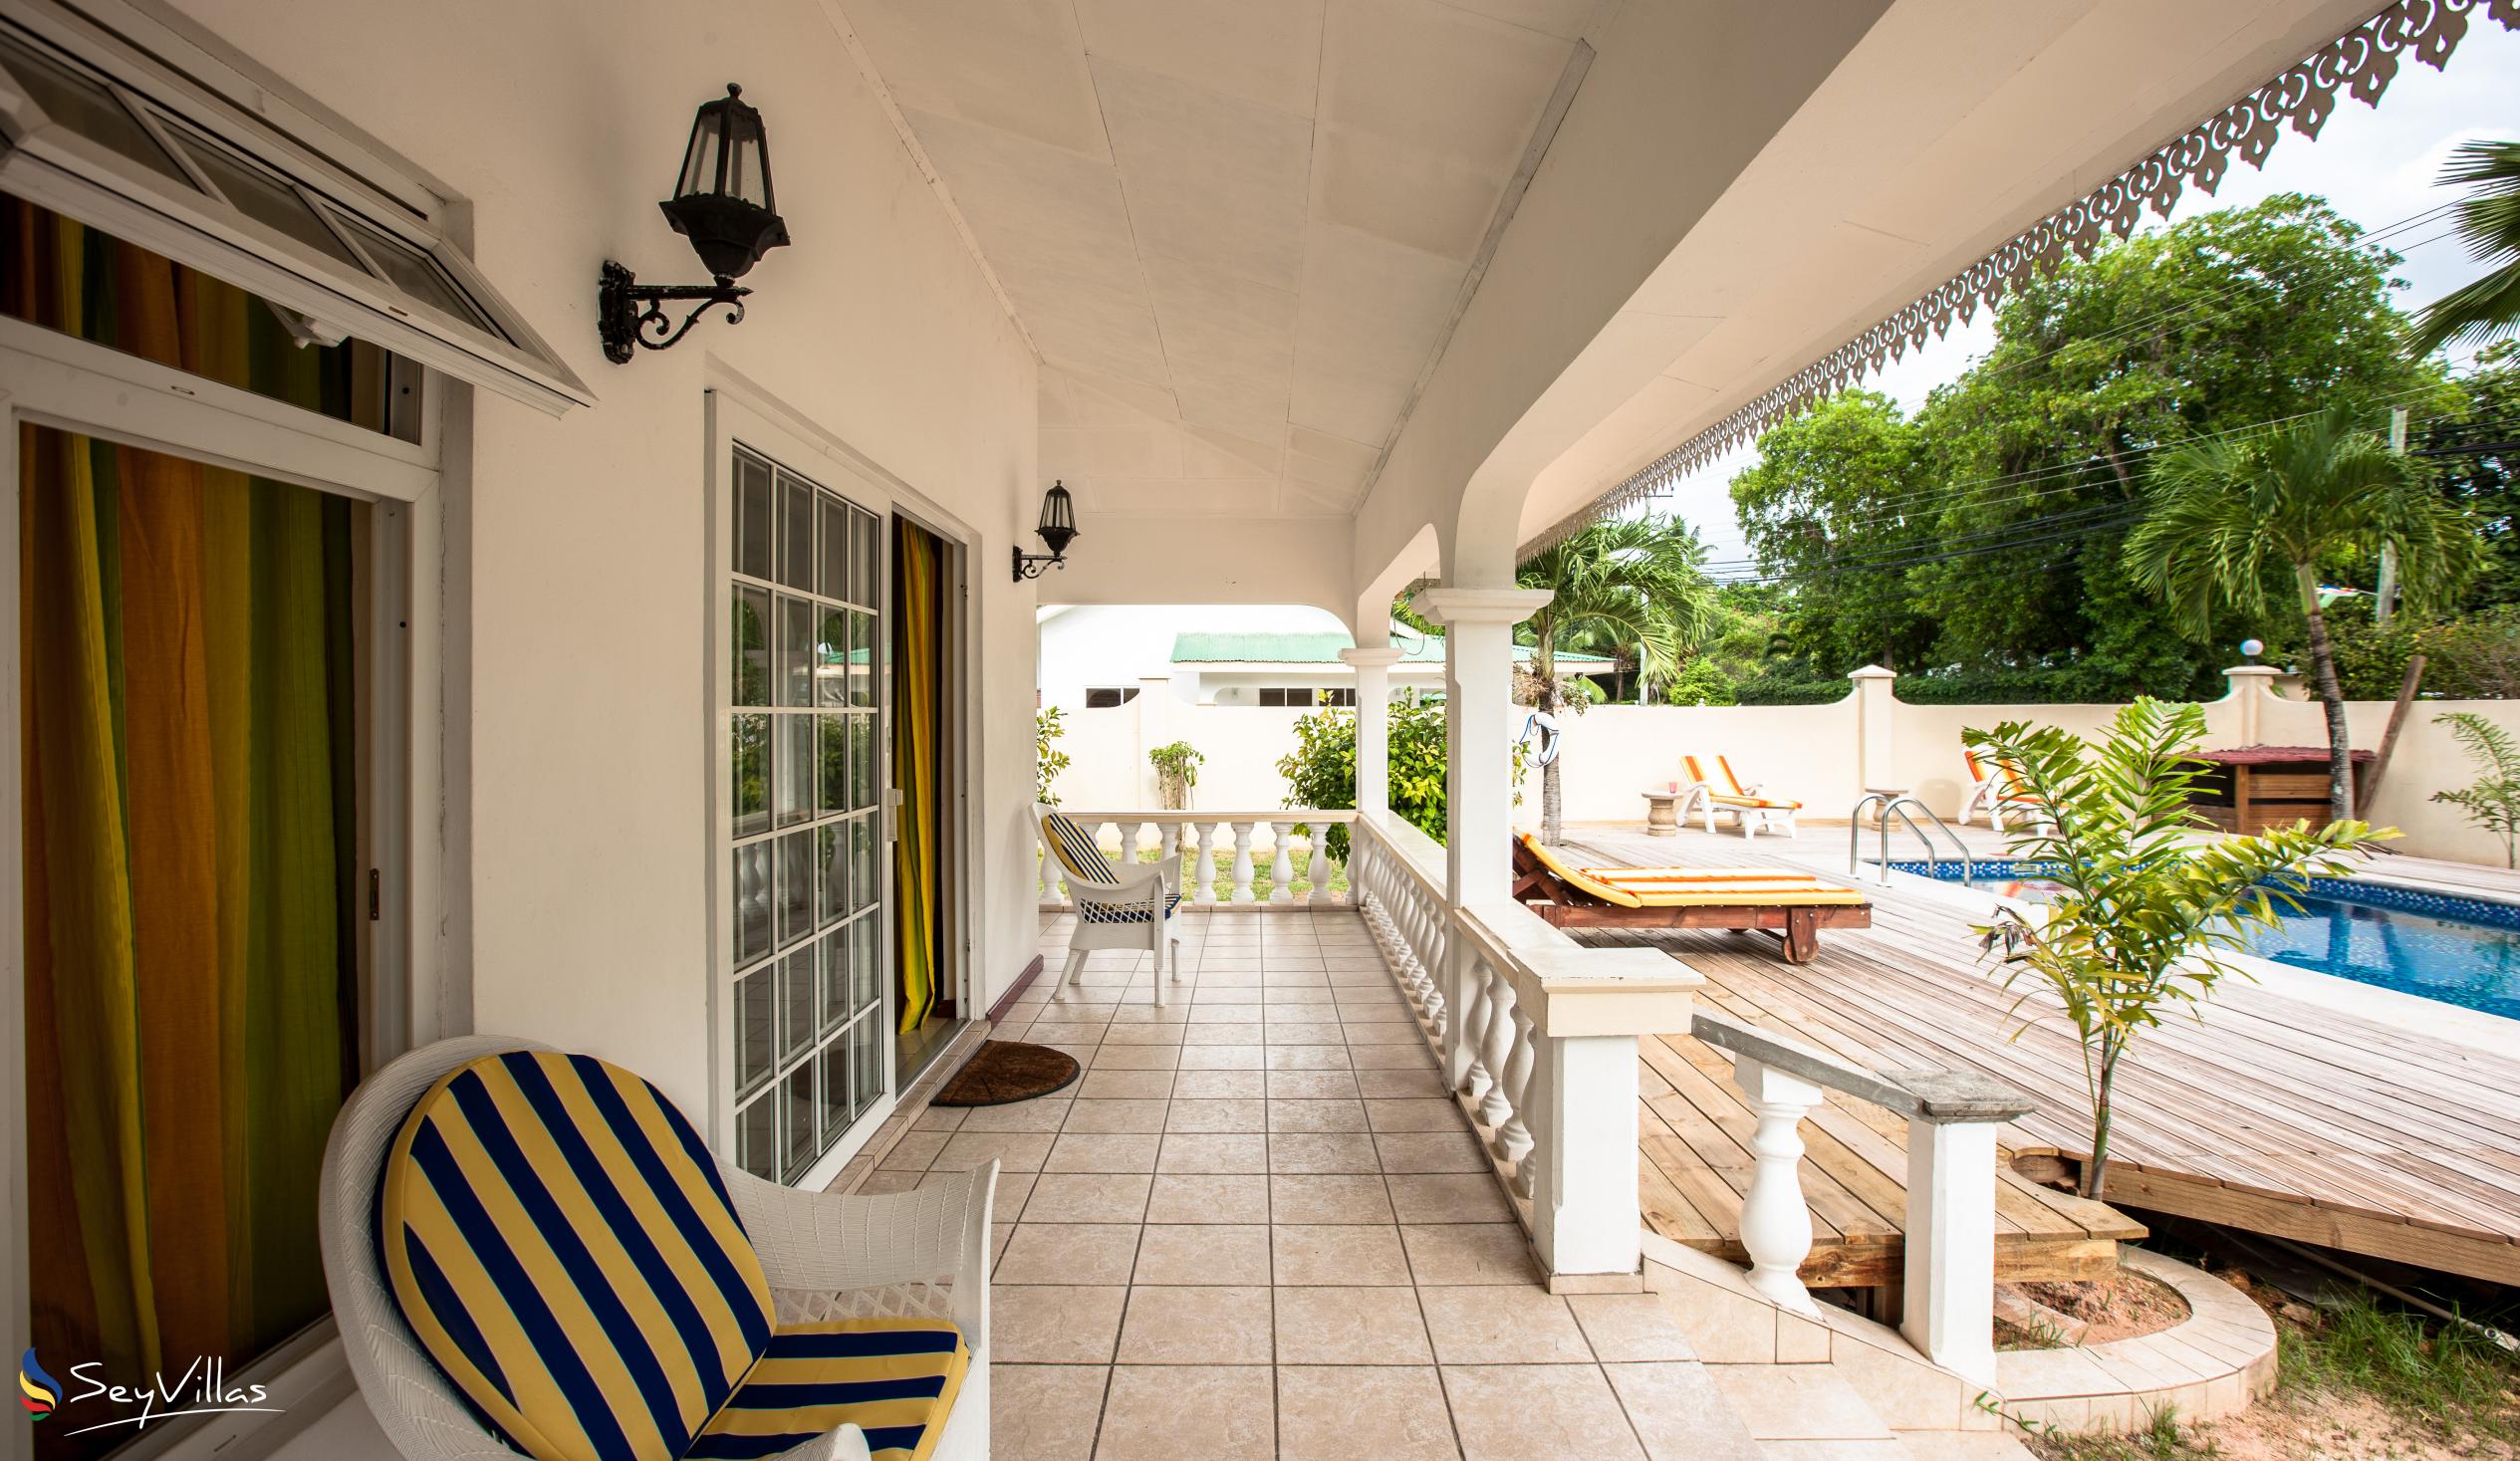 Foto 11: Villa Confort - Aussenbereich - Praslin (Seychellen)